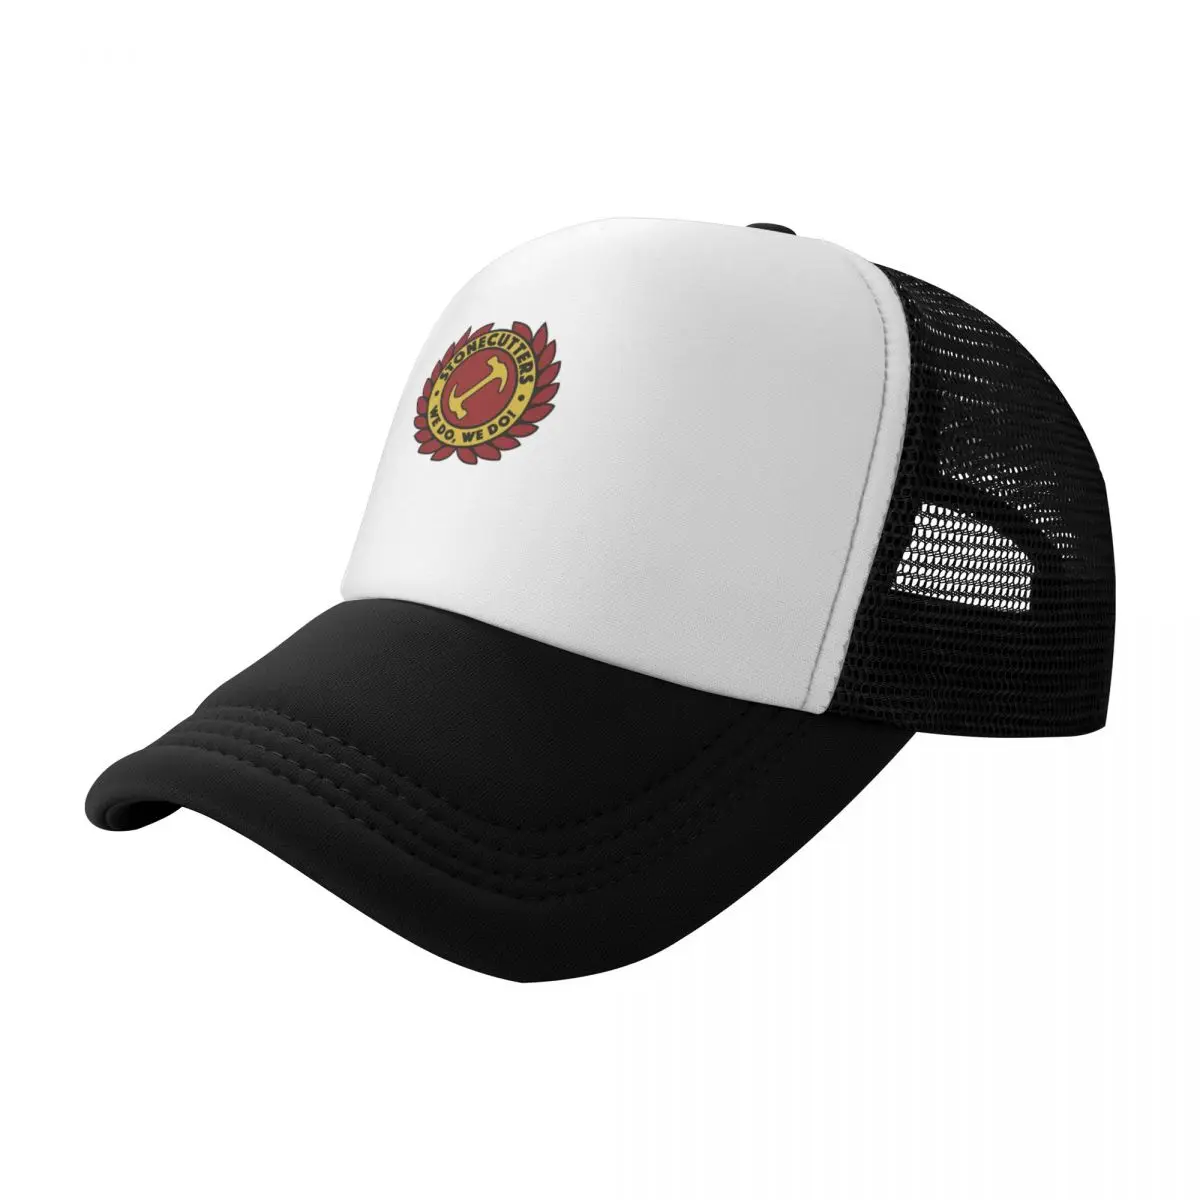 Бейсбольная кепка с логотипом Stonecutters, каска Rave, роскошная мужская кепка, солнцезащитная кепка, женские шляпы, мужские кепки